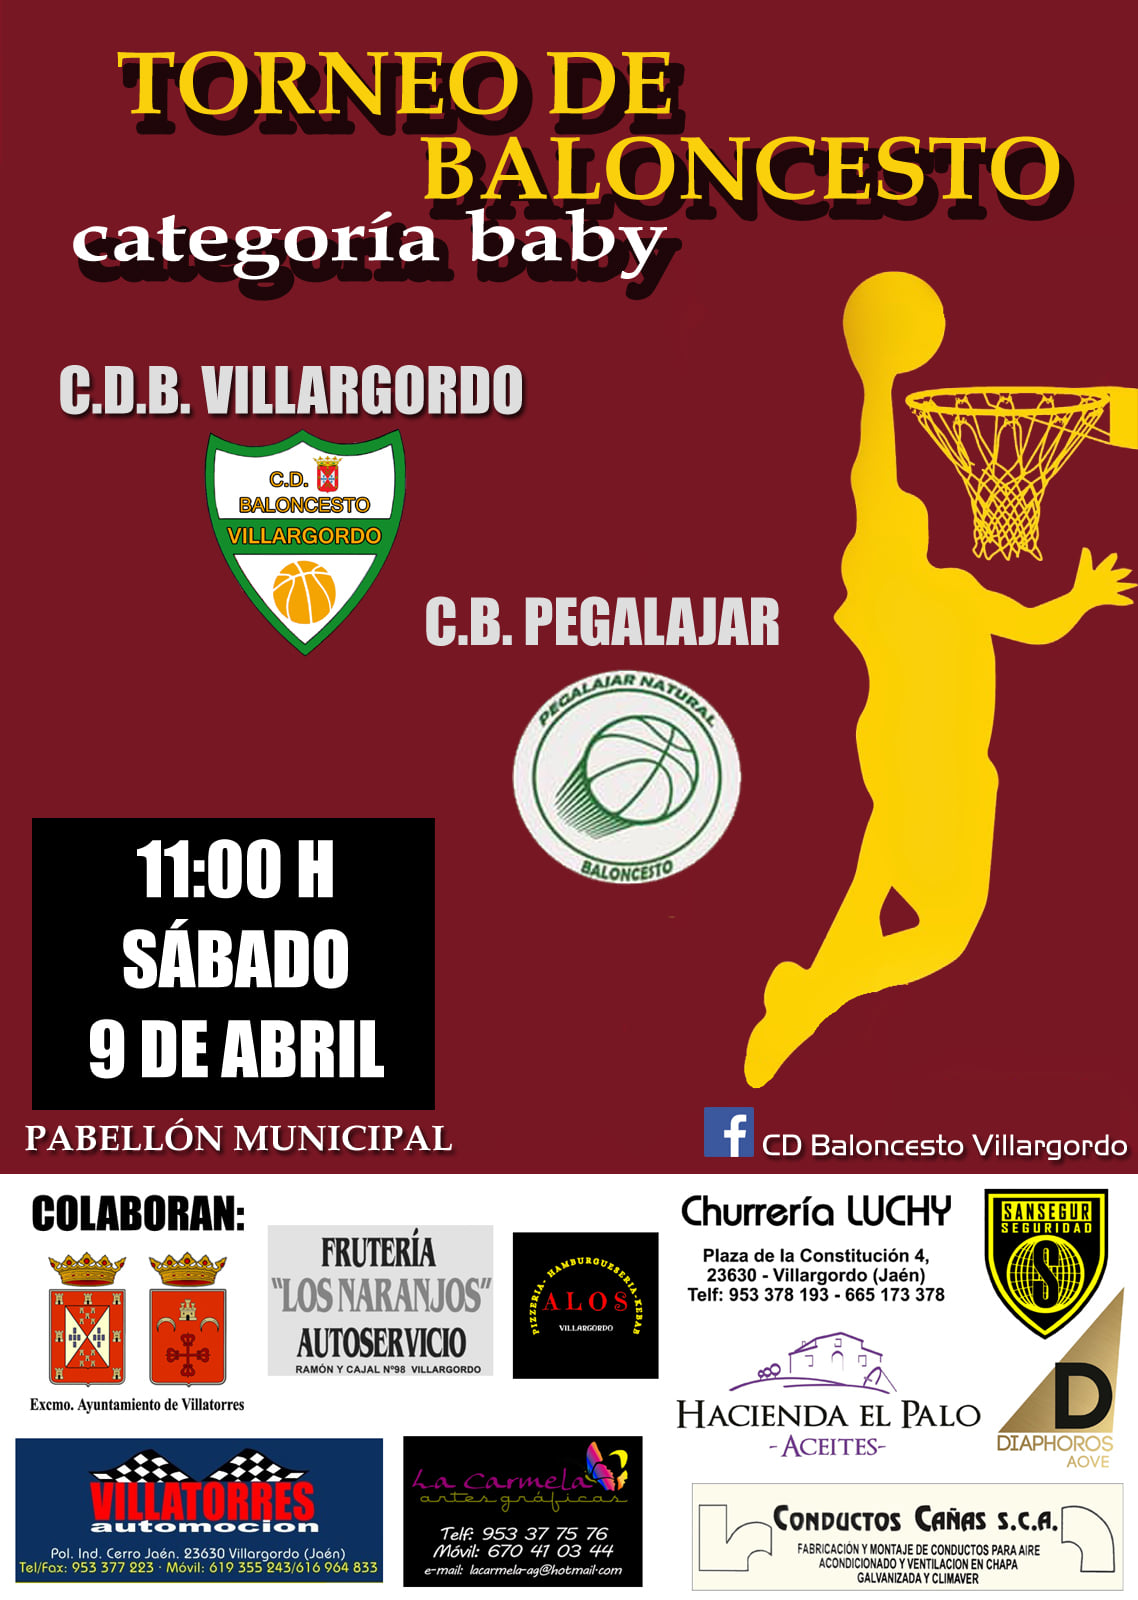 Torneo Baloncesto Categoría Baby C.D.B Villargordo - C.B Pegalajar